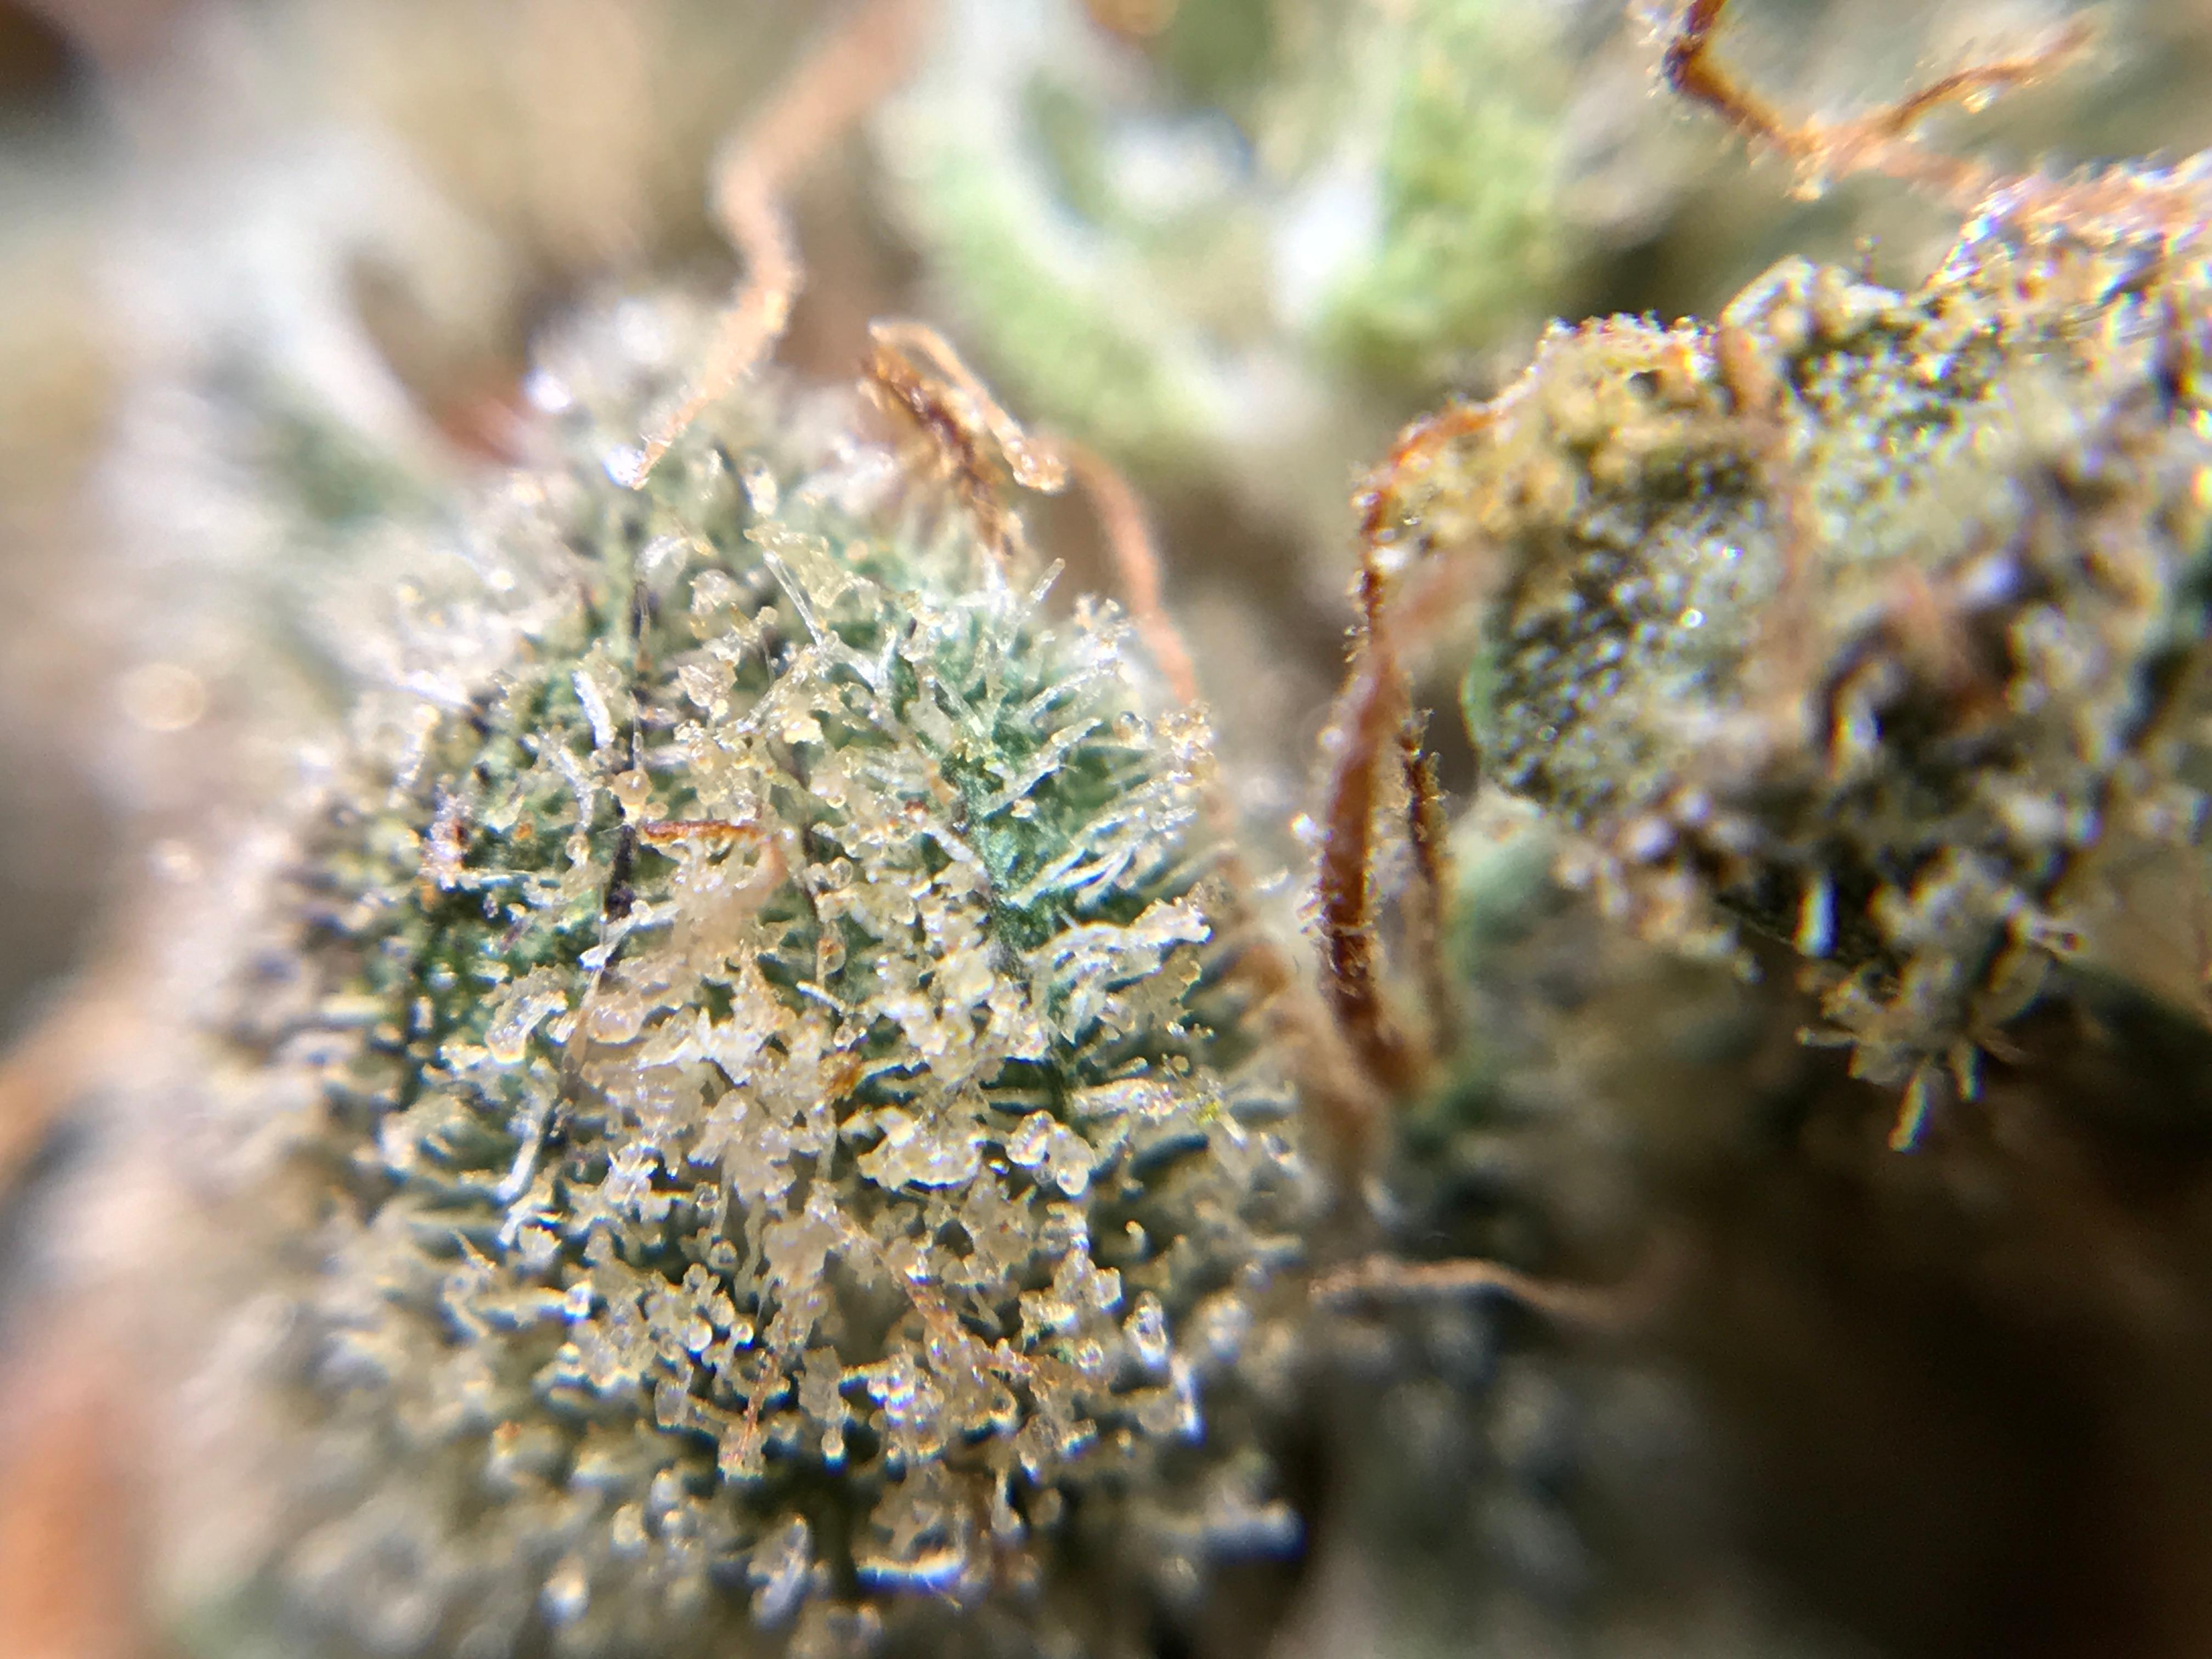 Star Buds Medical Marijuana Dispensary Altus Photo